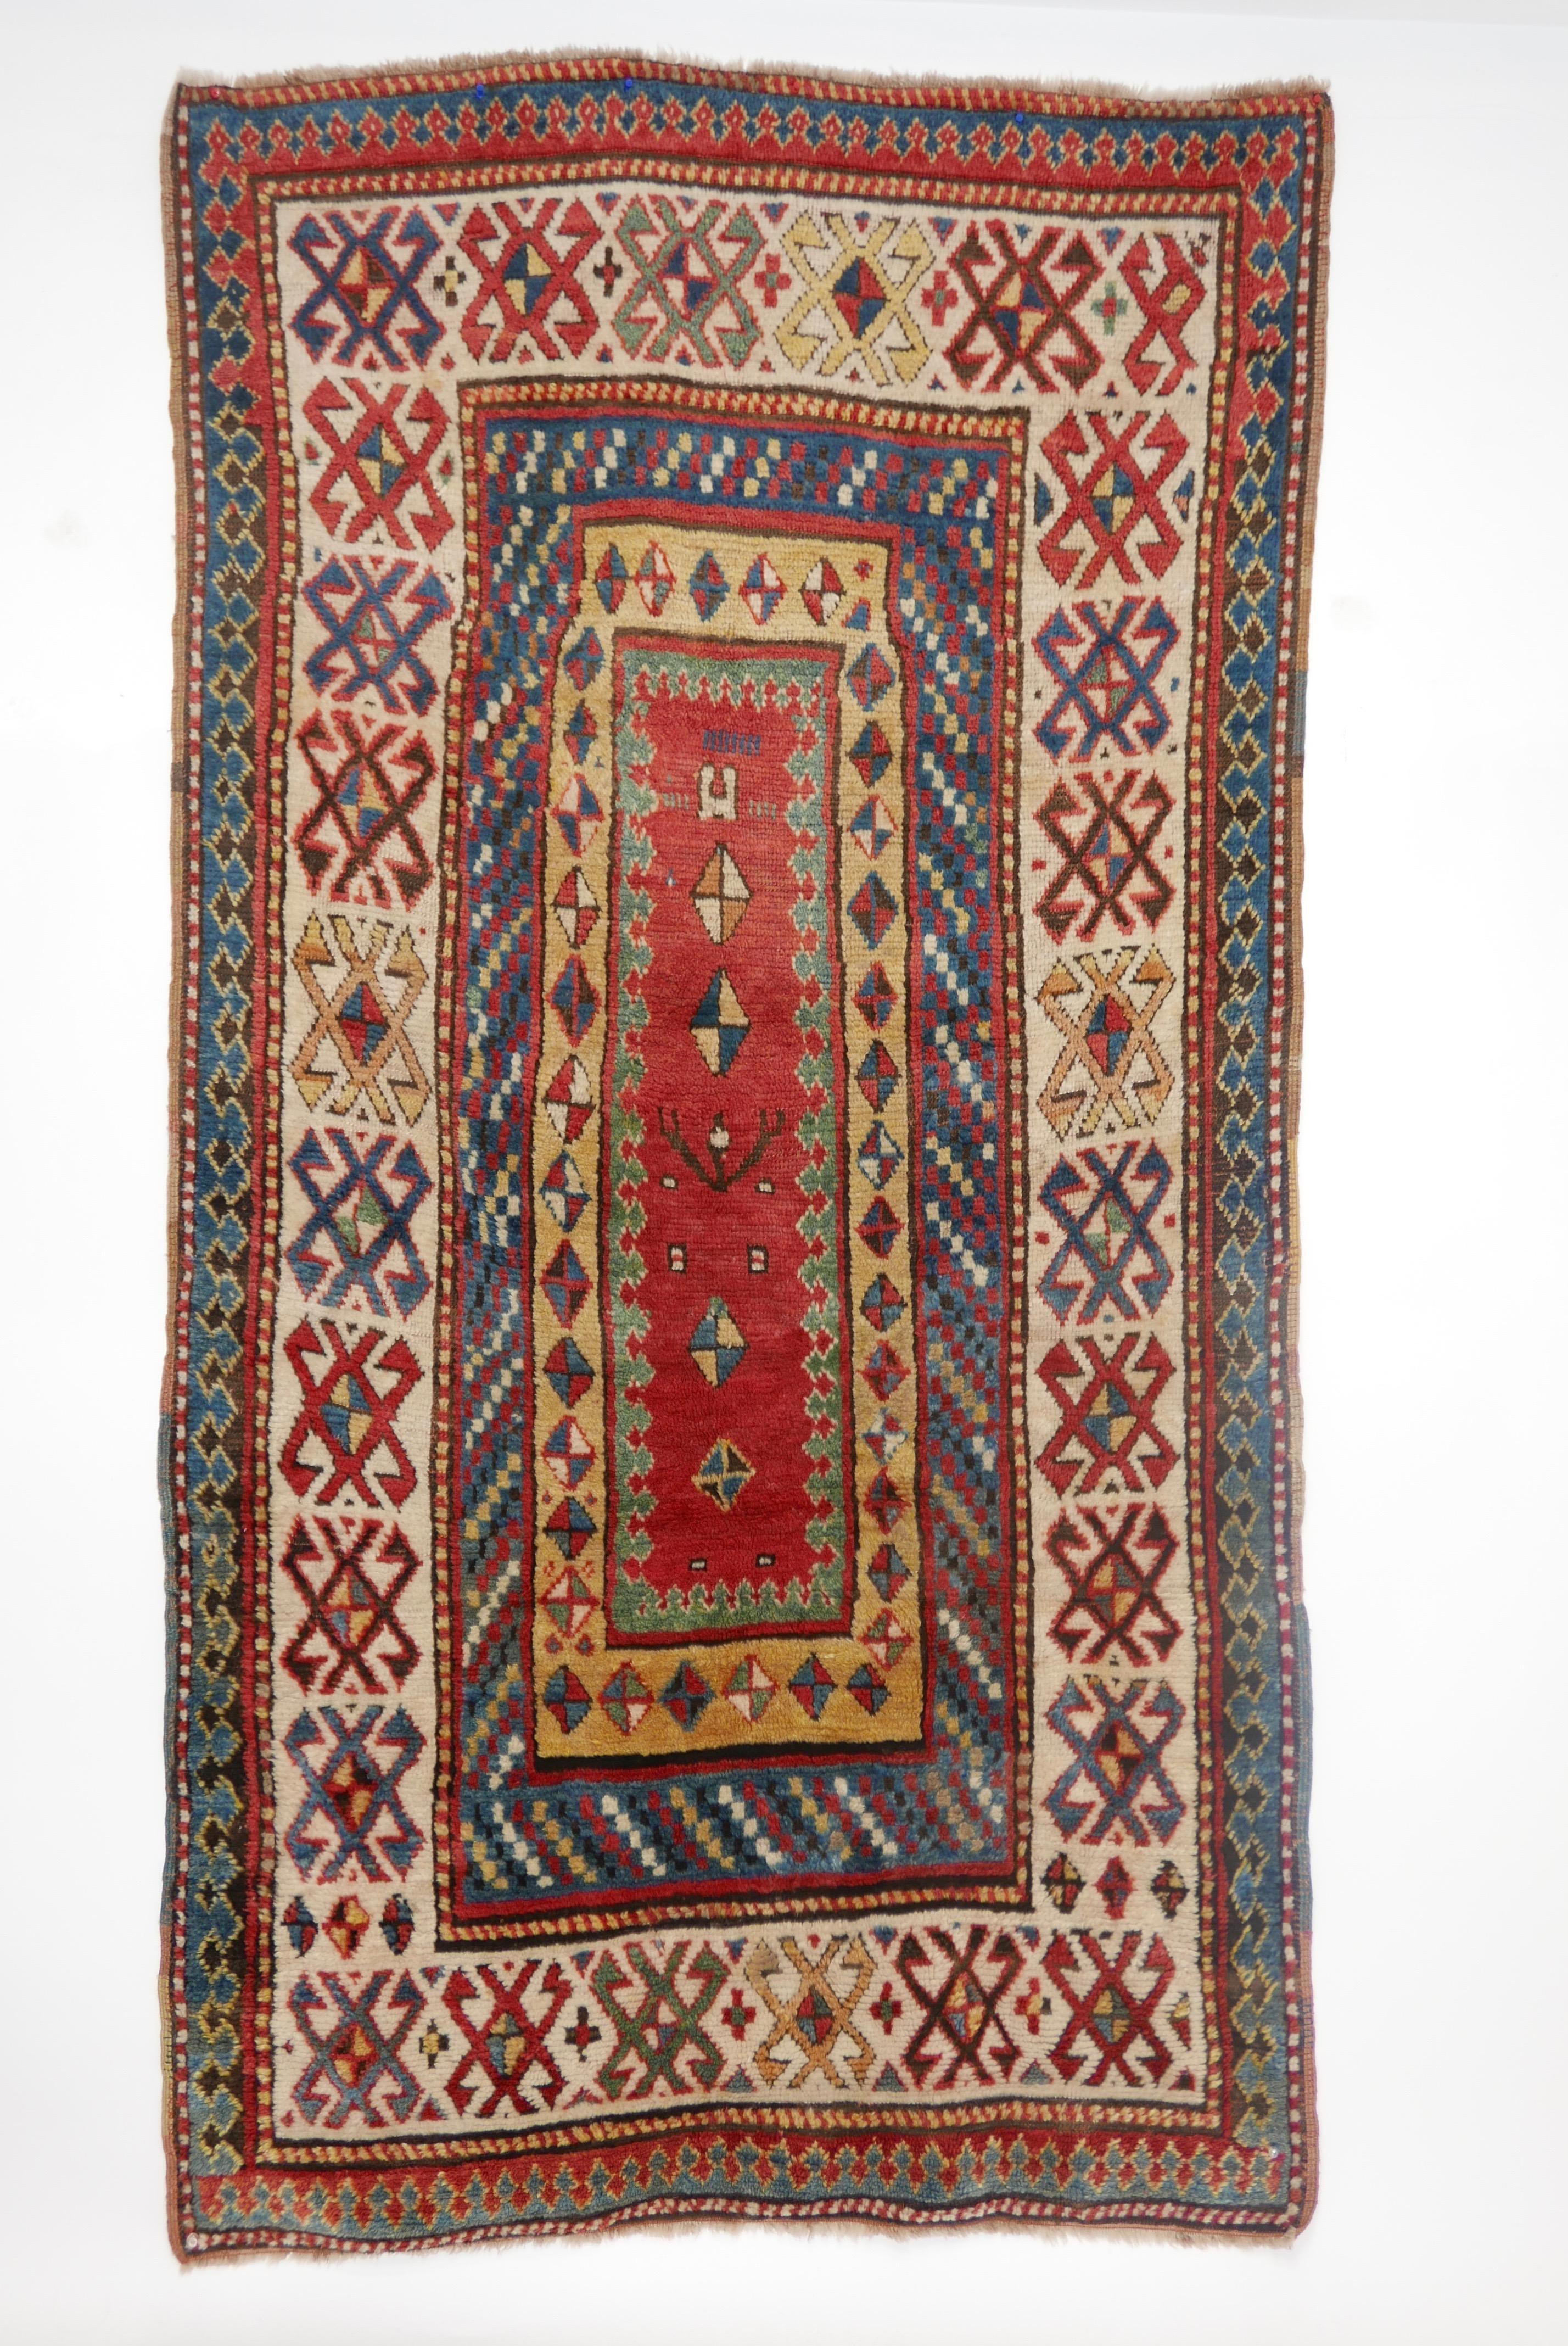 Antique Kazak Wool Rug, 19th Century Kazakhstan 3